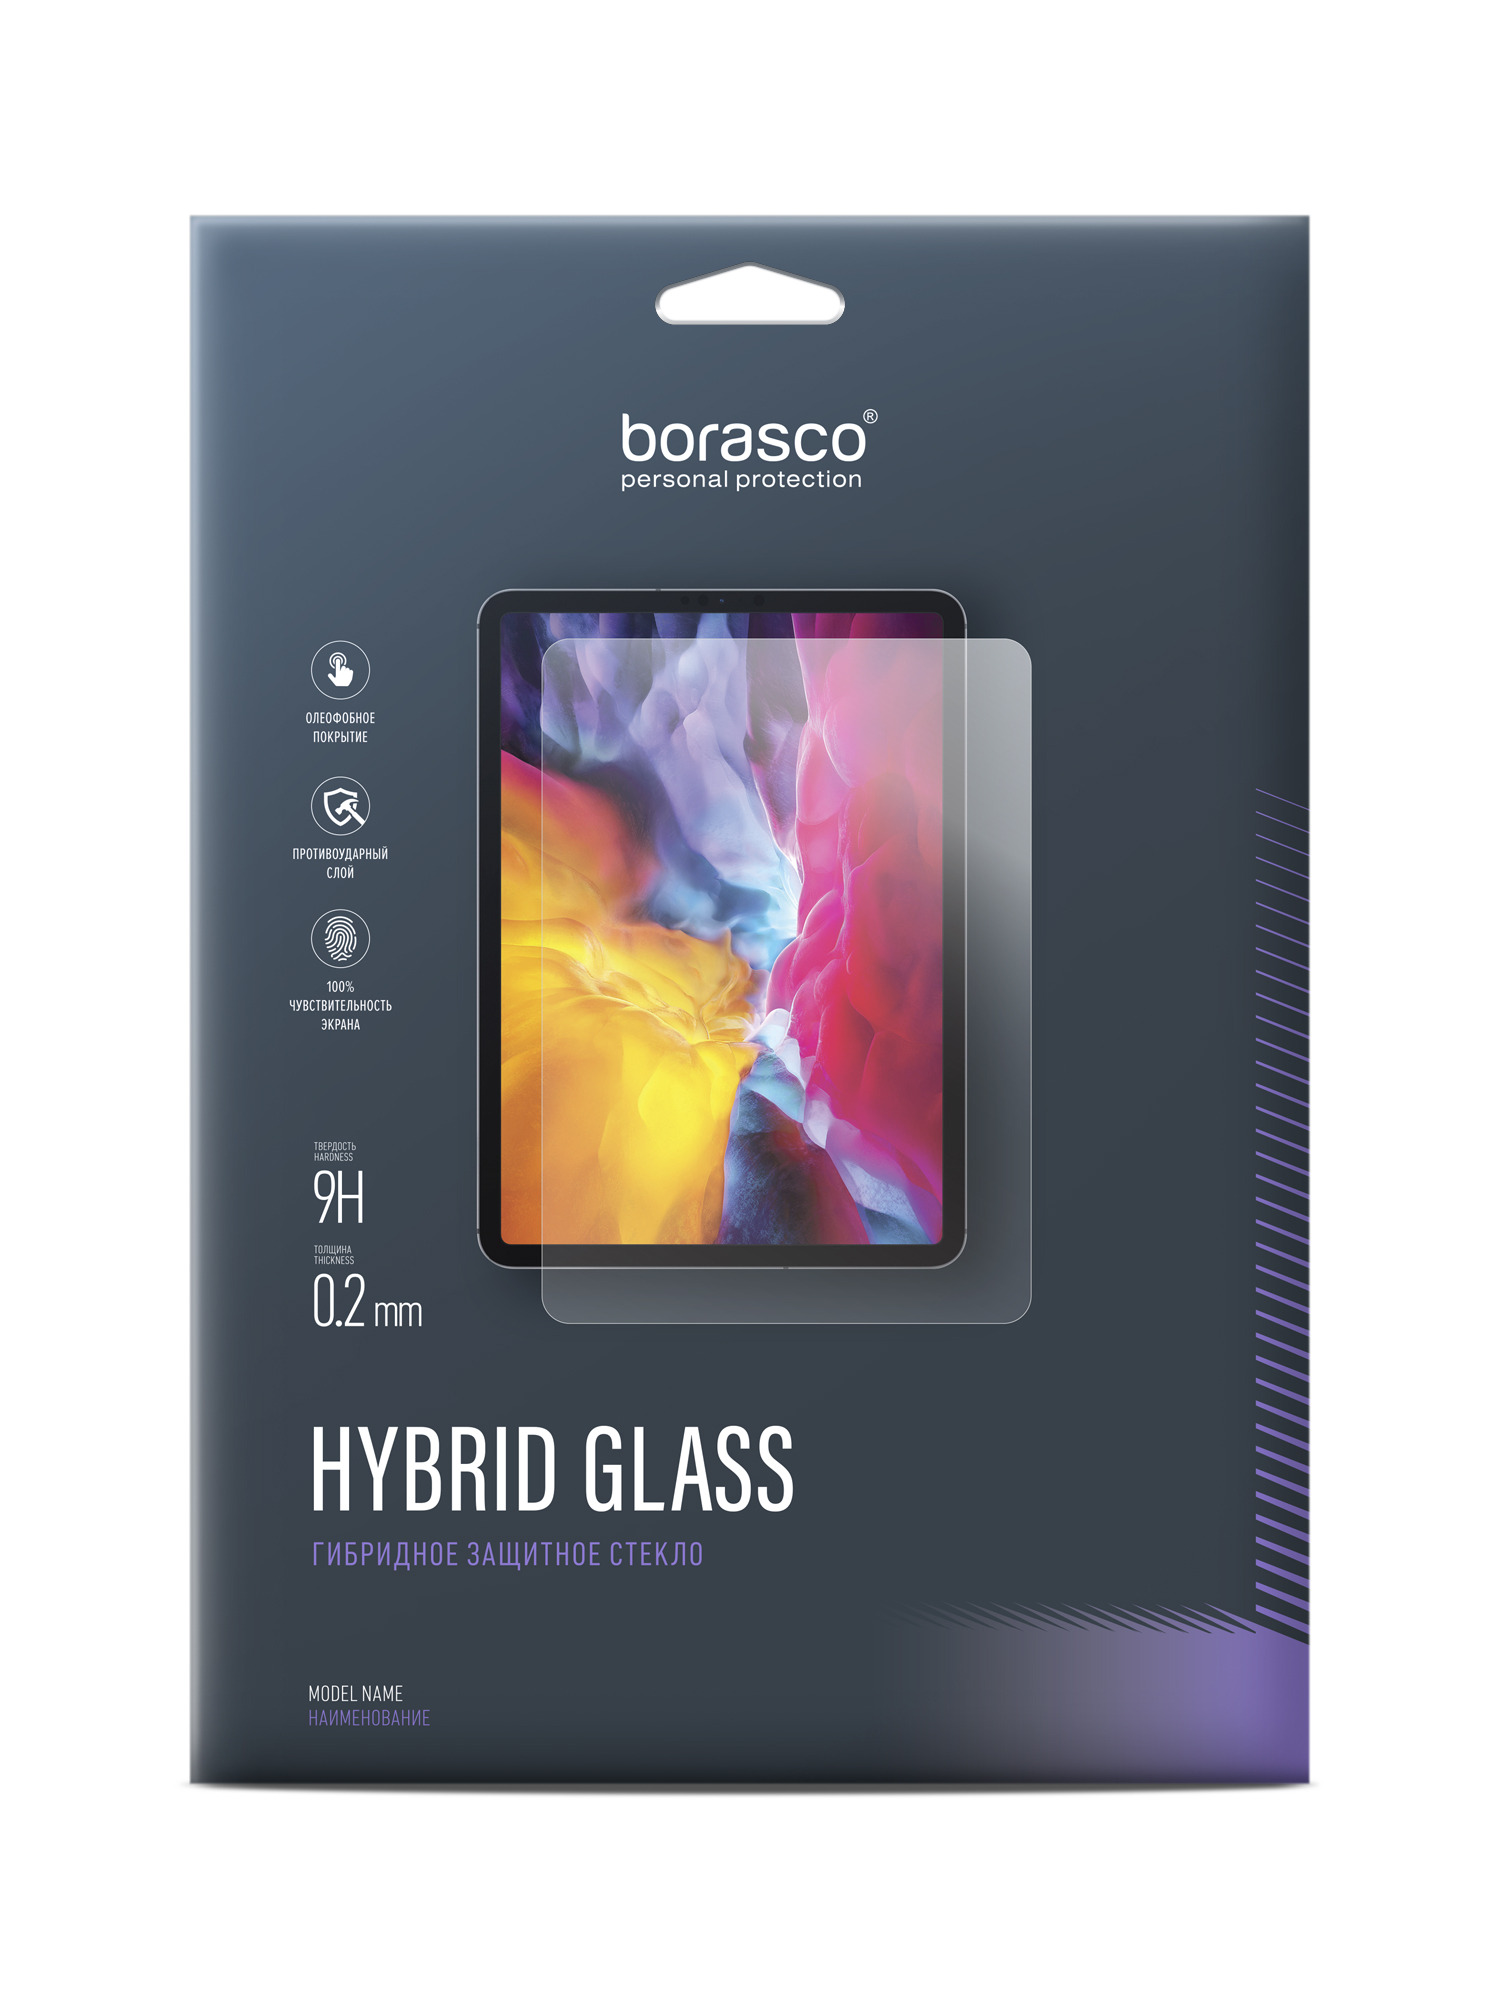 Защитное стекло Hybrid Glass для Huawei MediaPad M5 Lite 8.0 чехол для планшета huawei mediapad m5 lite 10 1 m5 10 8 mediapad m5 lite 8 t3 8 0 t3 10 9 6 t5 10 10 1